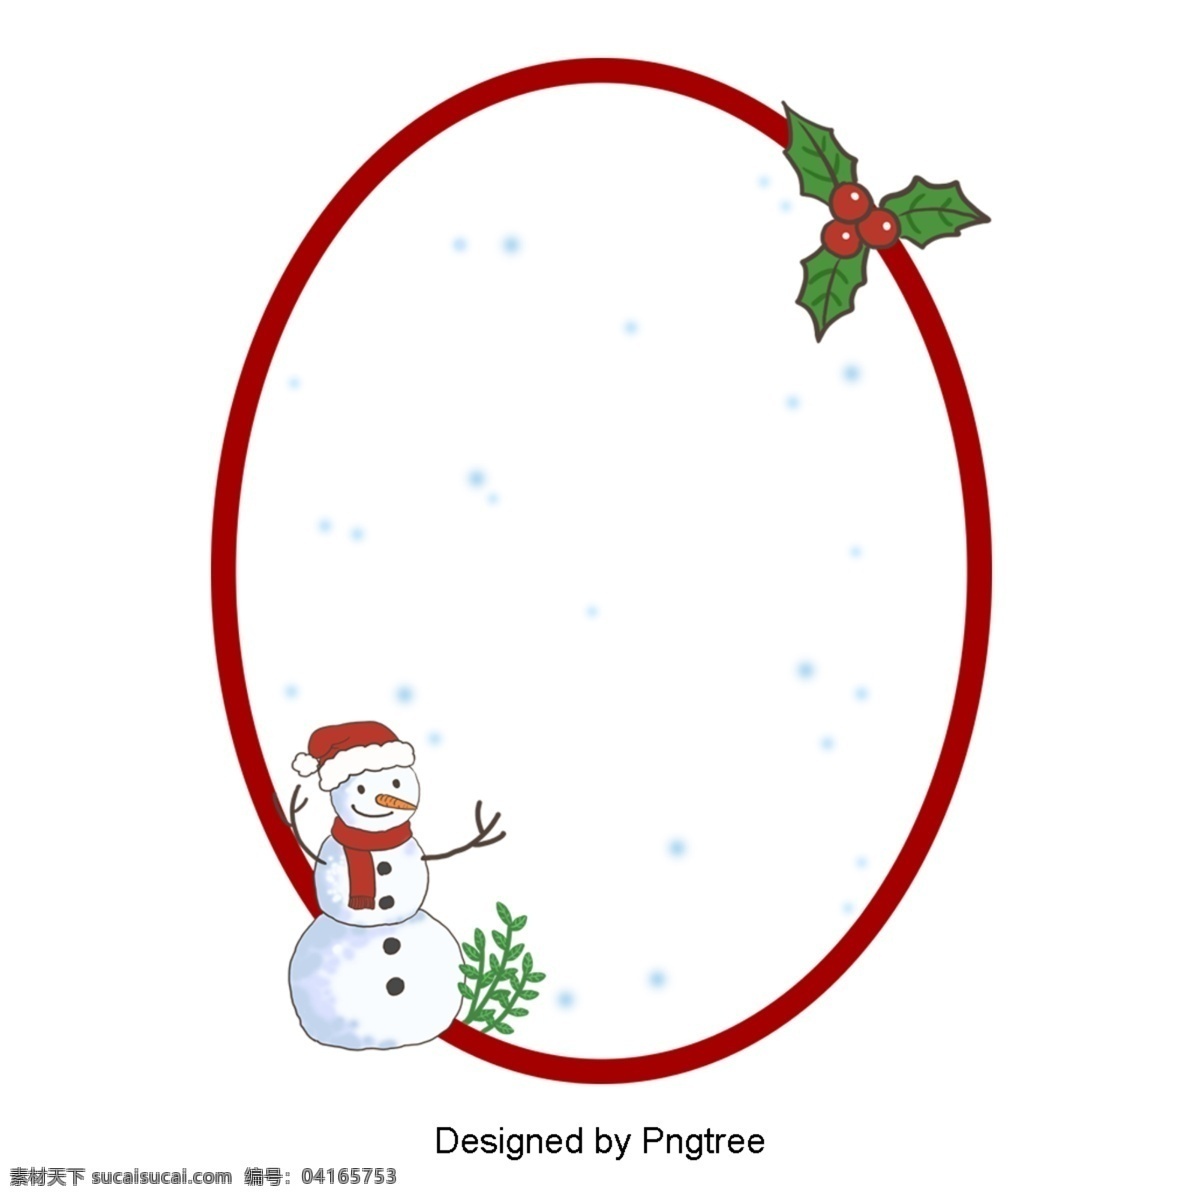 卡通 可爱 红色 简单 椭圆 雪人 圣诞 边境 圣诞节 极 简 主义 绿色 种植 装饰